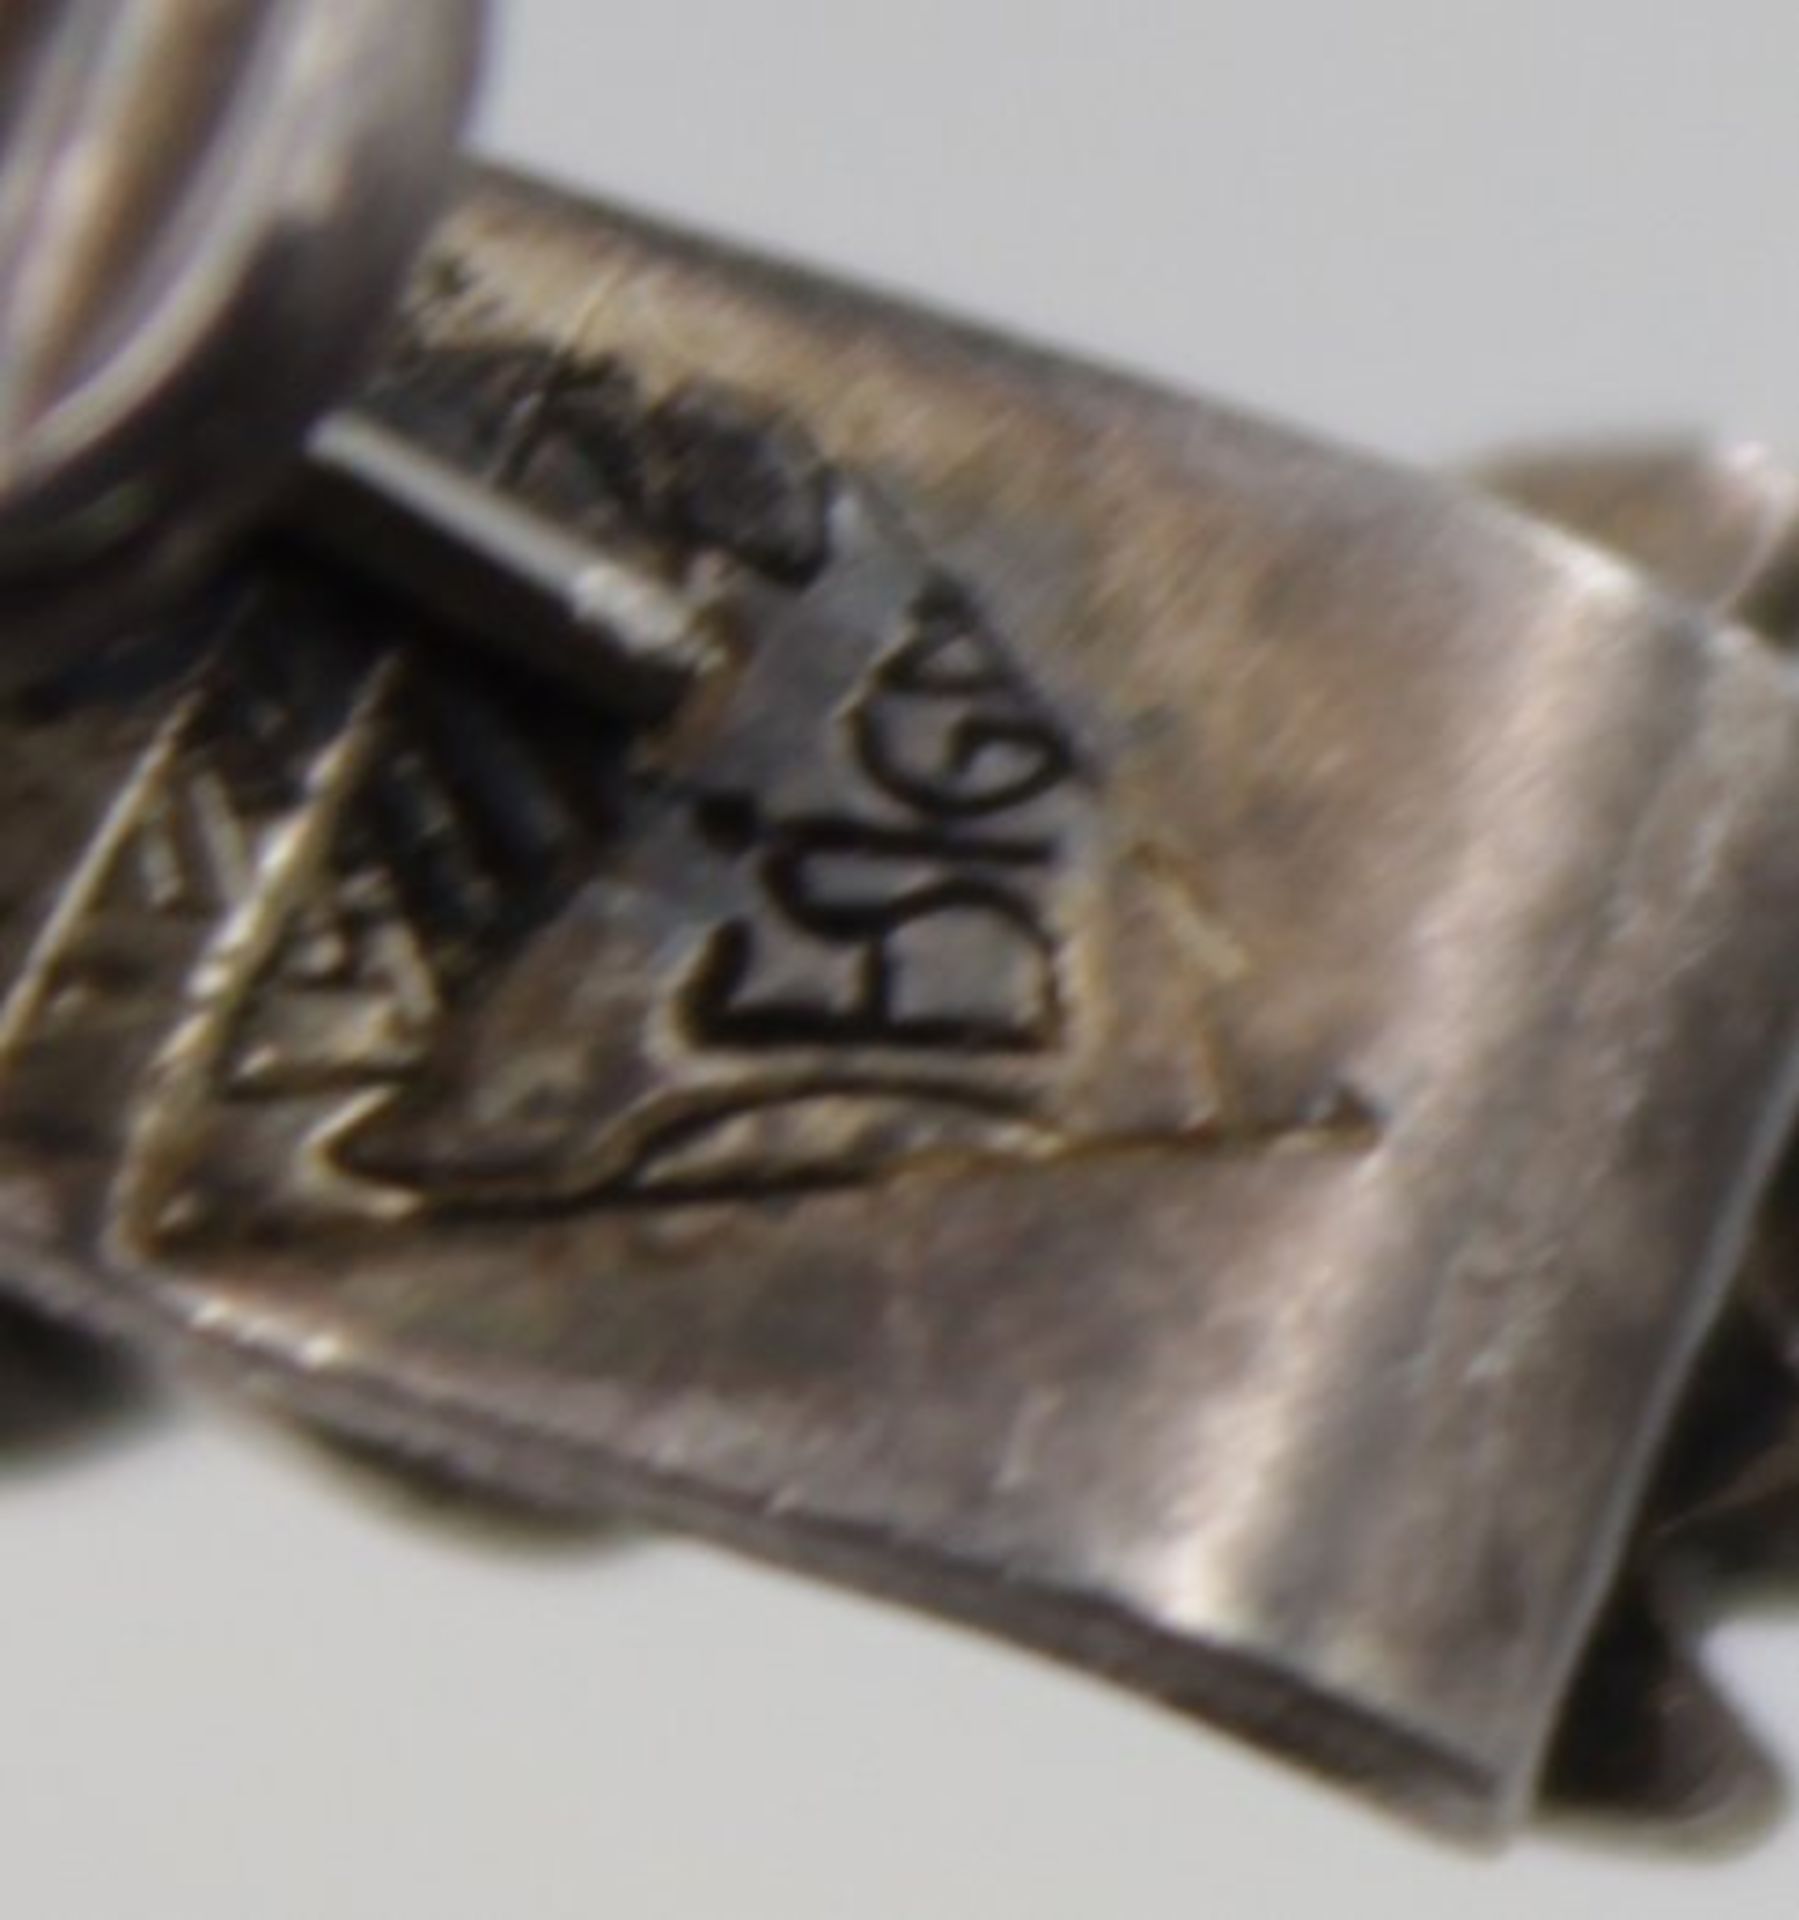 Kravattenklammer o.ä., Hummerform, 925er Silber, 12,9gr. , L-5,8cm. - Bild 4 aus 4